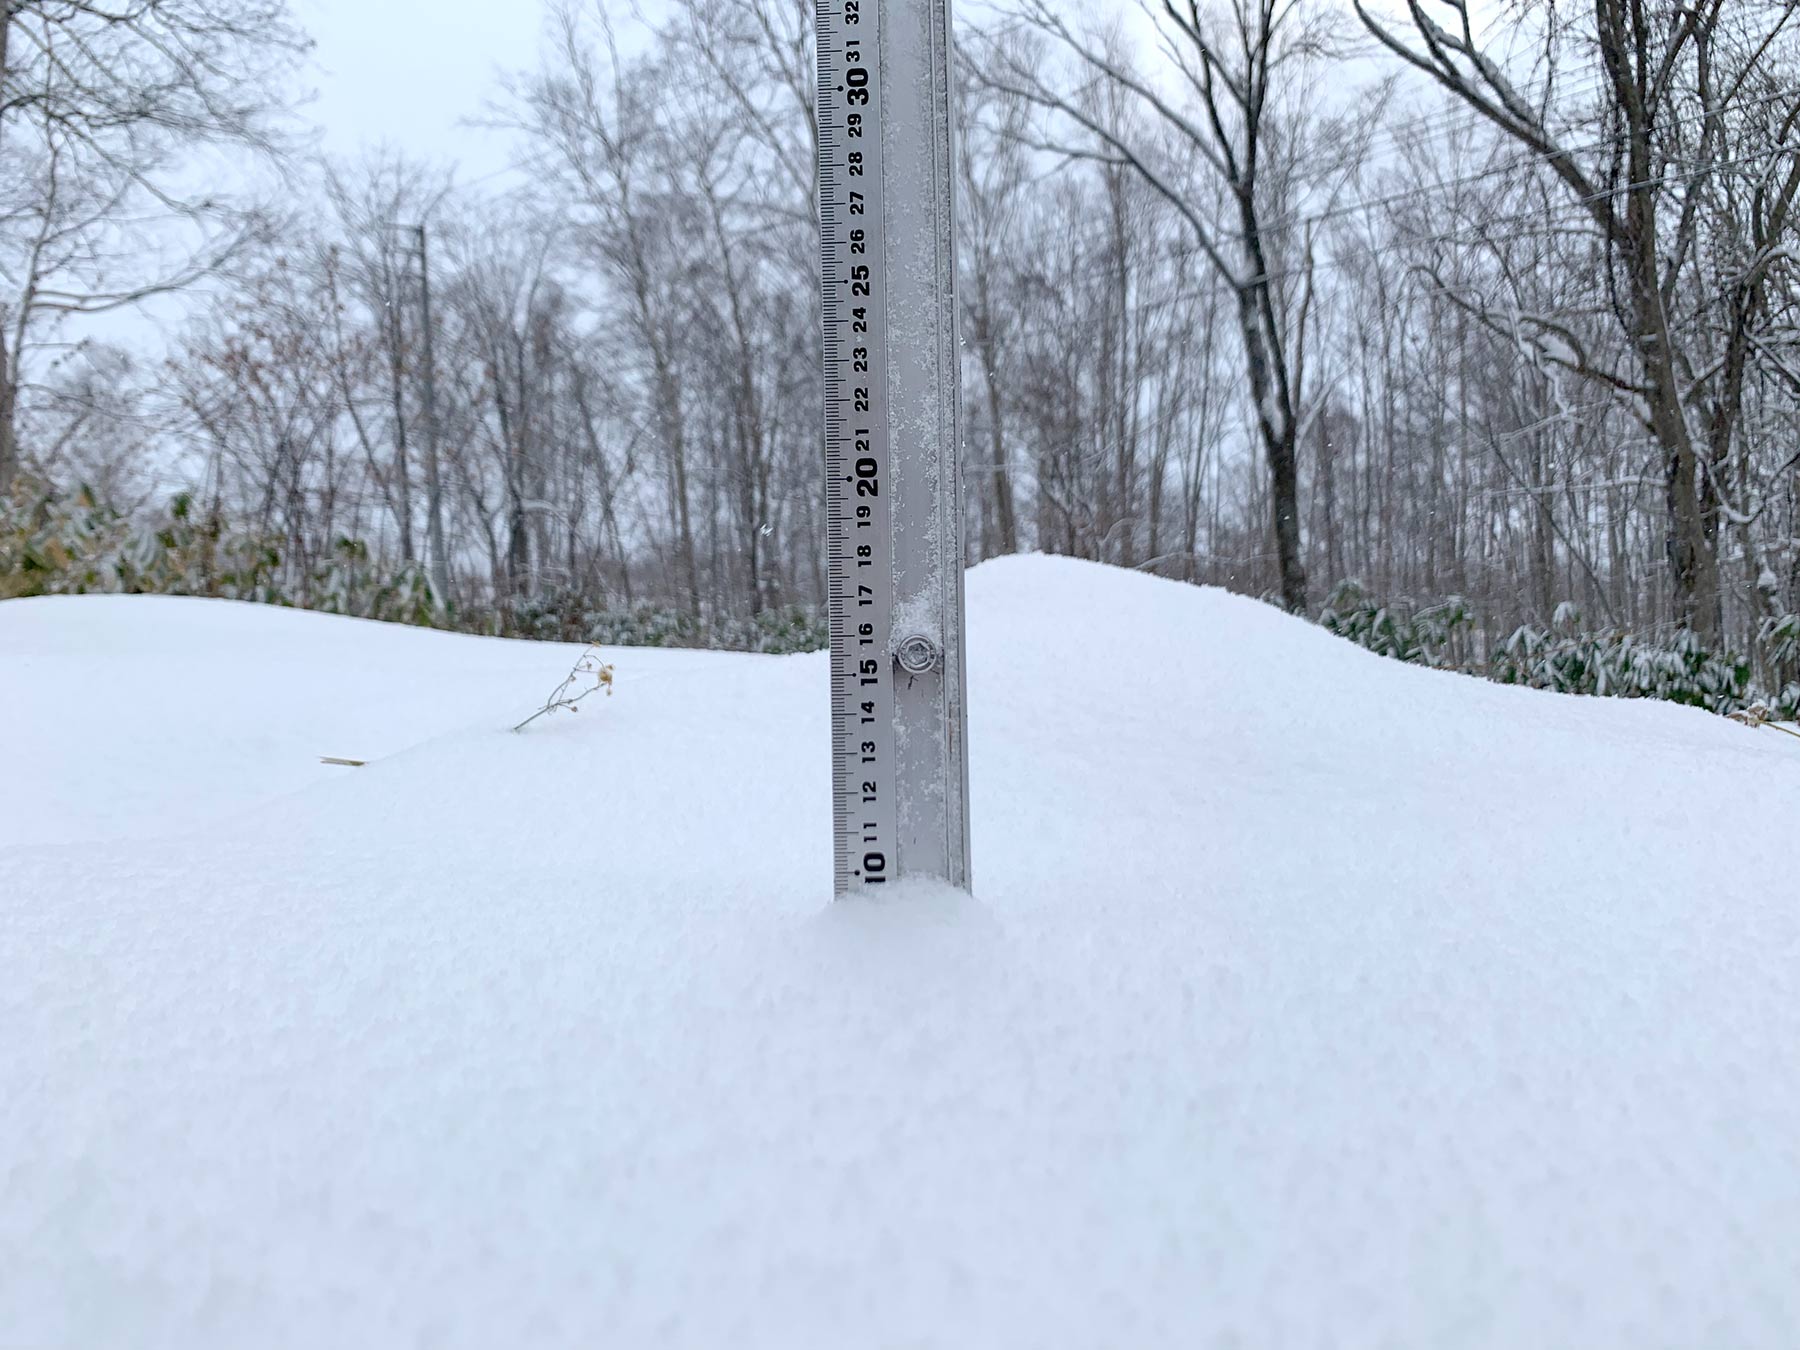 Niseko Snow Report, 17 November 2019